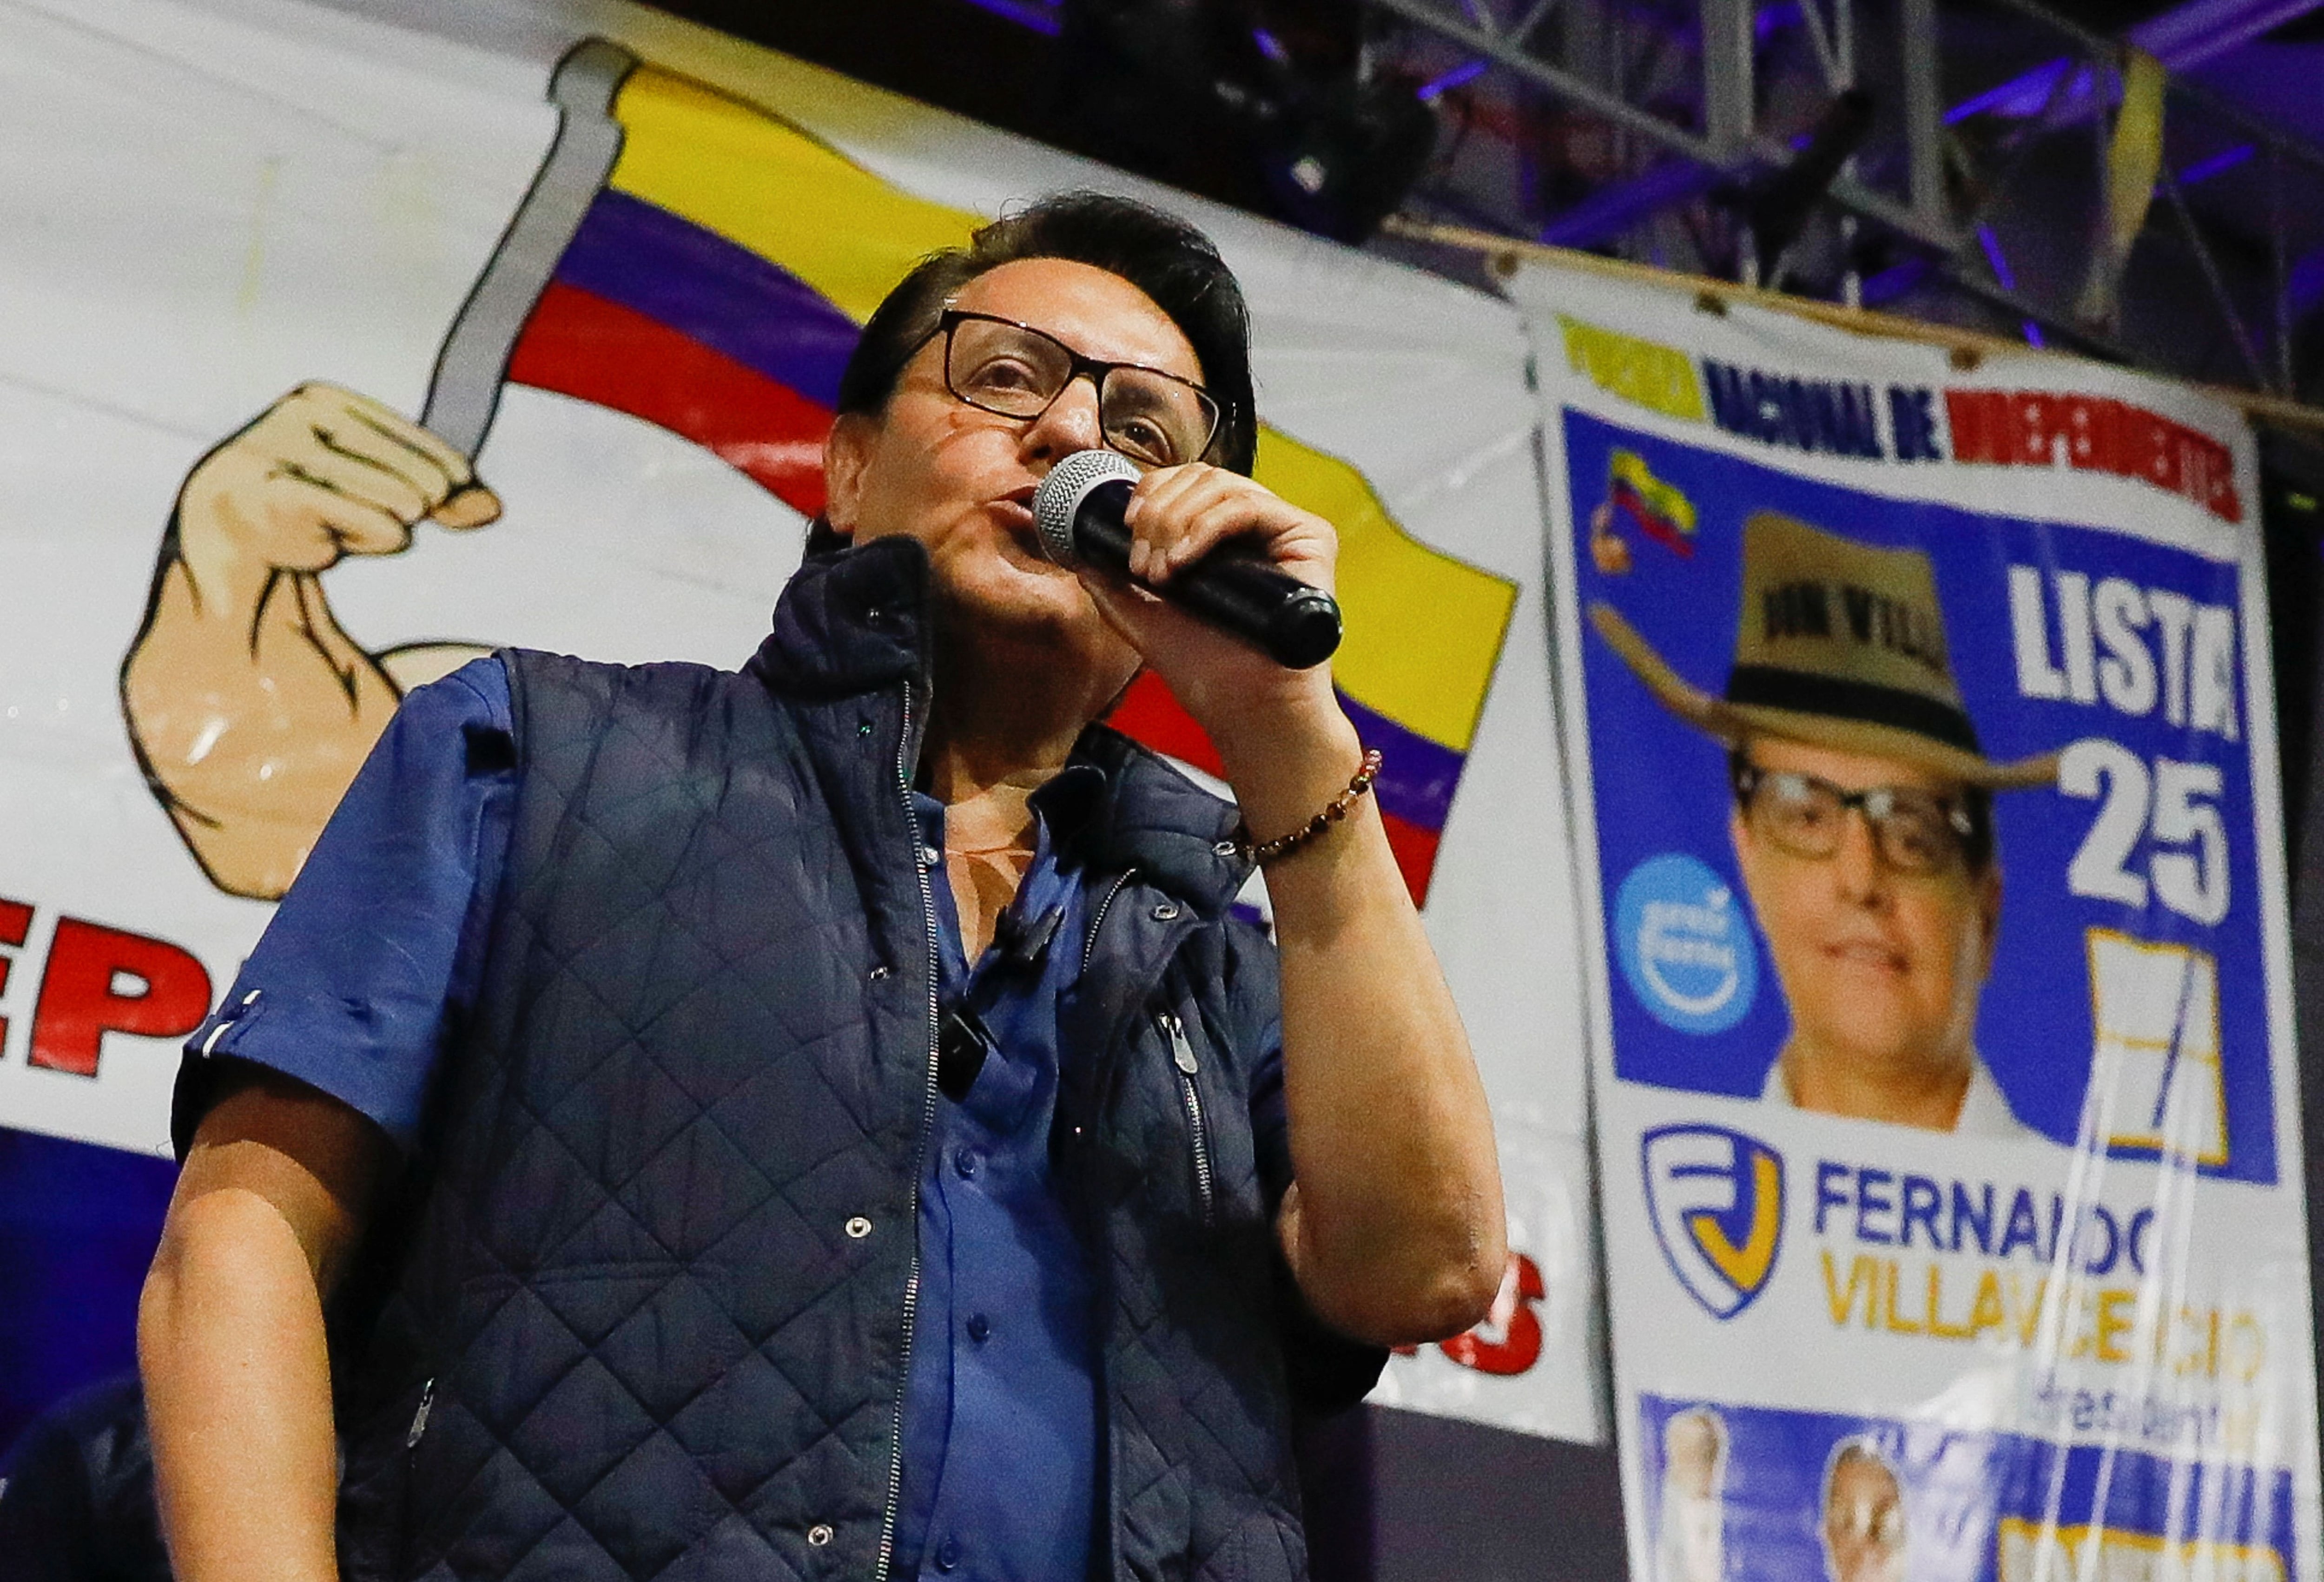 En su último discurso, Fernando Villavicencio se refirió a las mafias políticas. (REUTERS/Karen Toro)